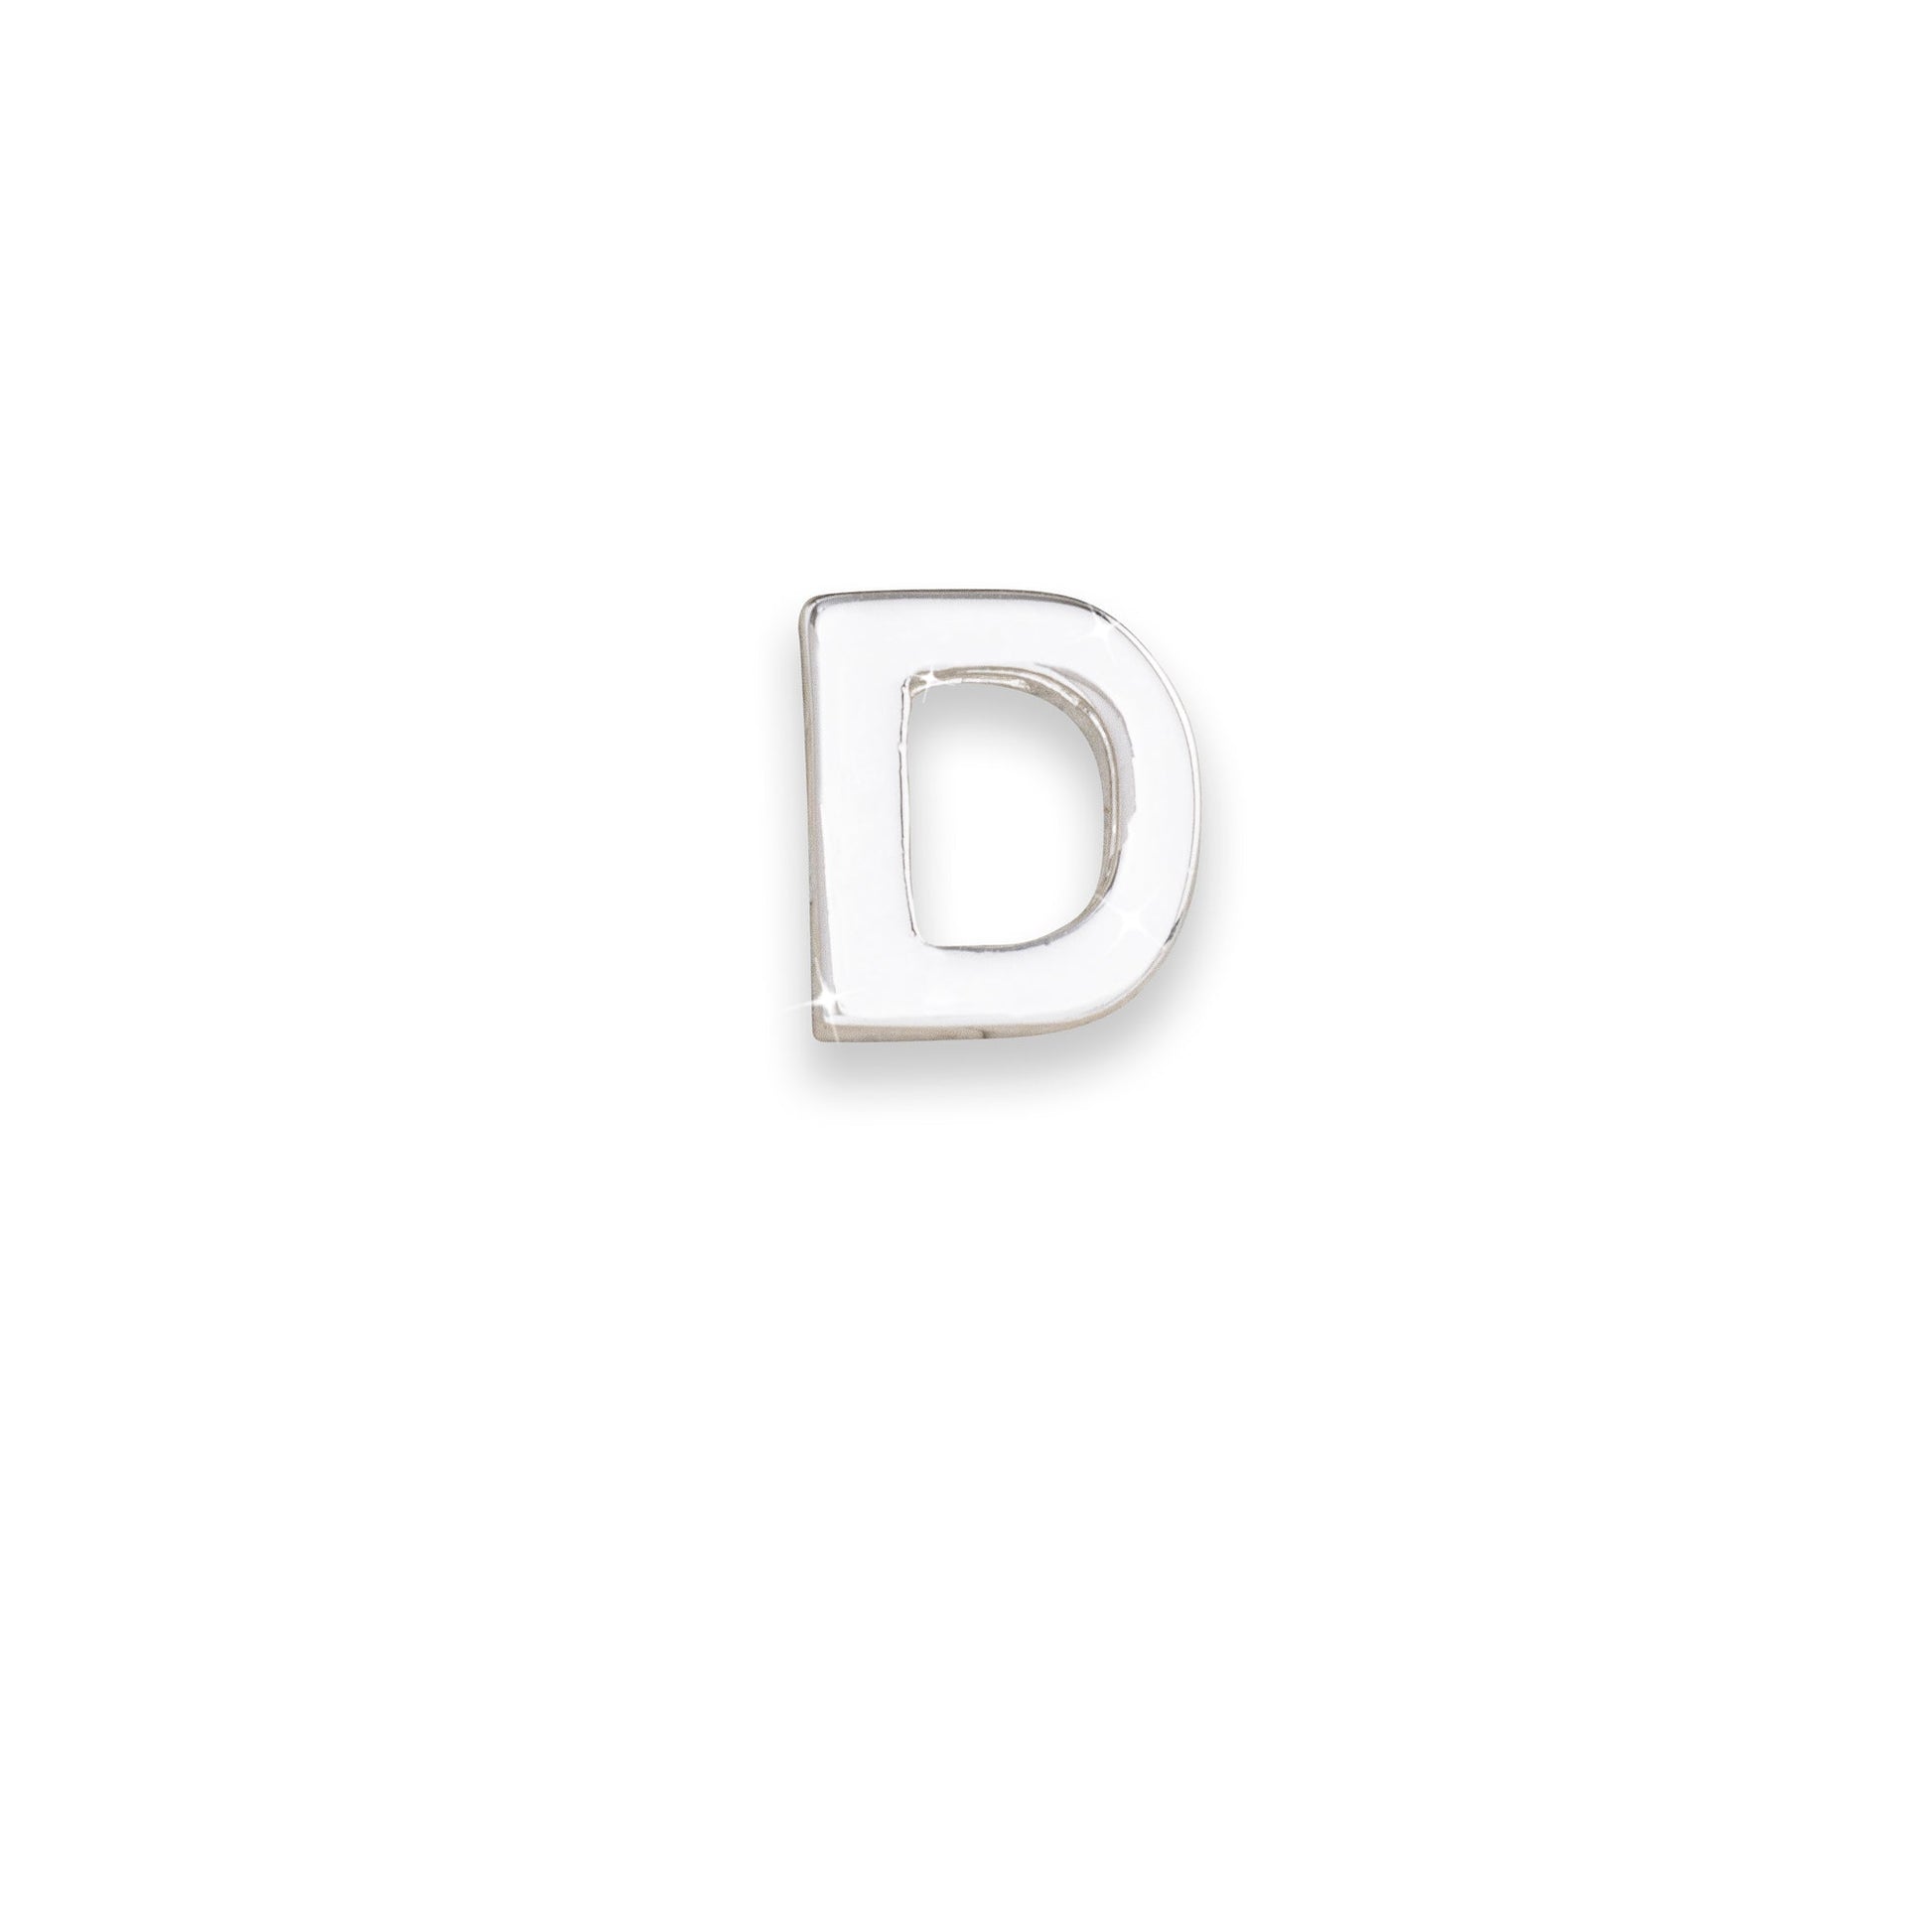 Silver letter D monogram charm for necklaces & bracelets